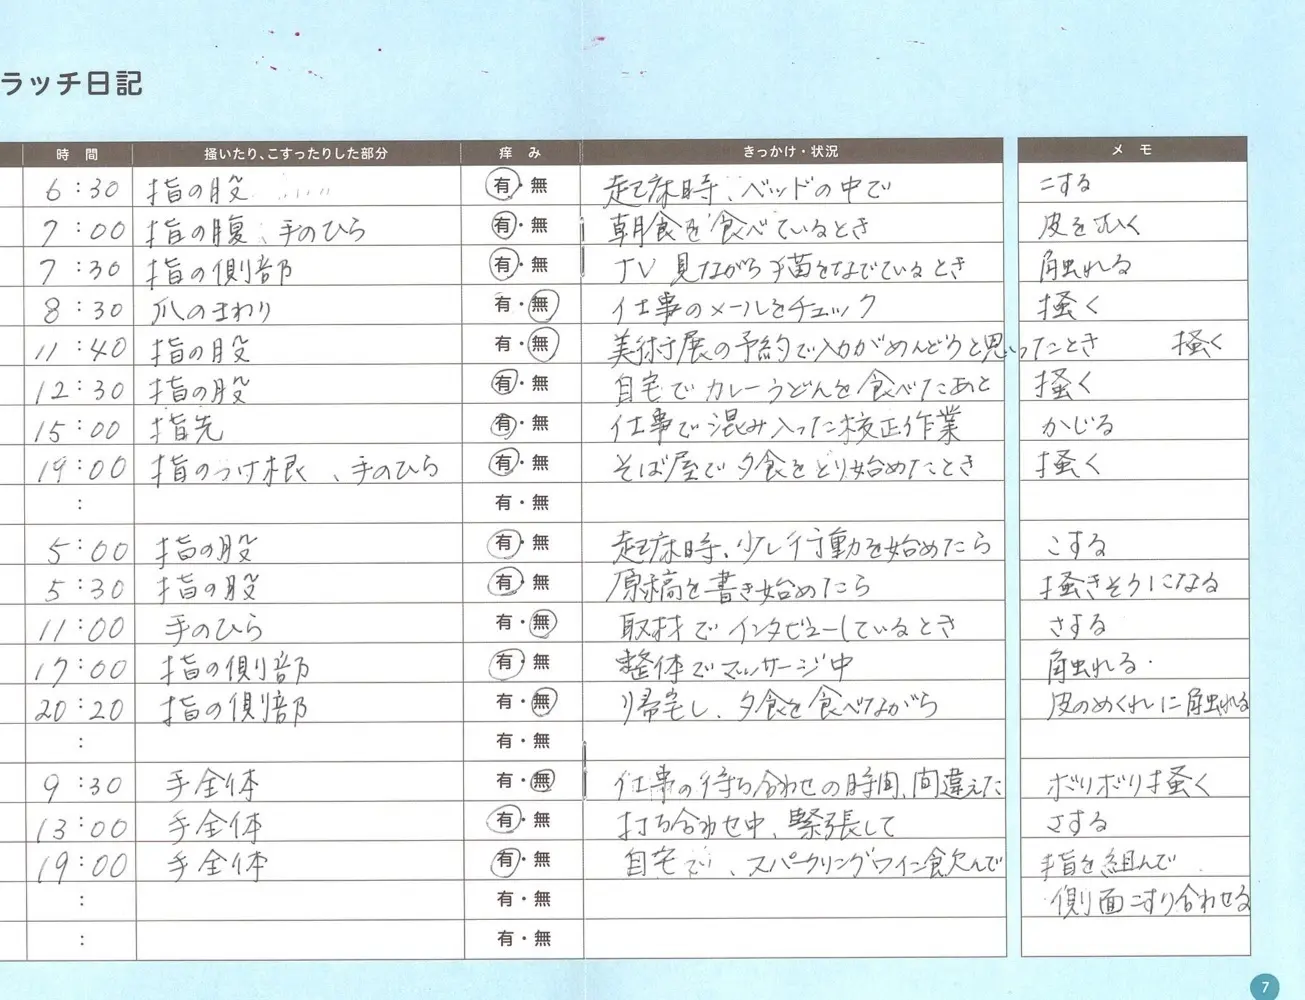 実際につけた小田の日記。どういうときに掻破行動をしているかがわかった。